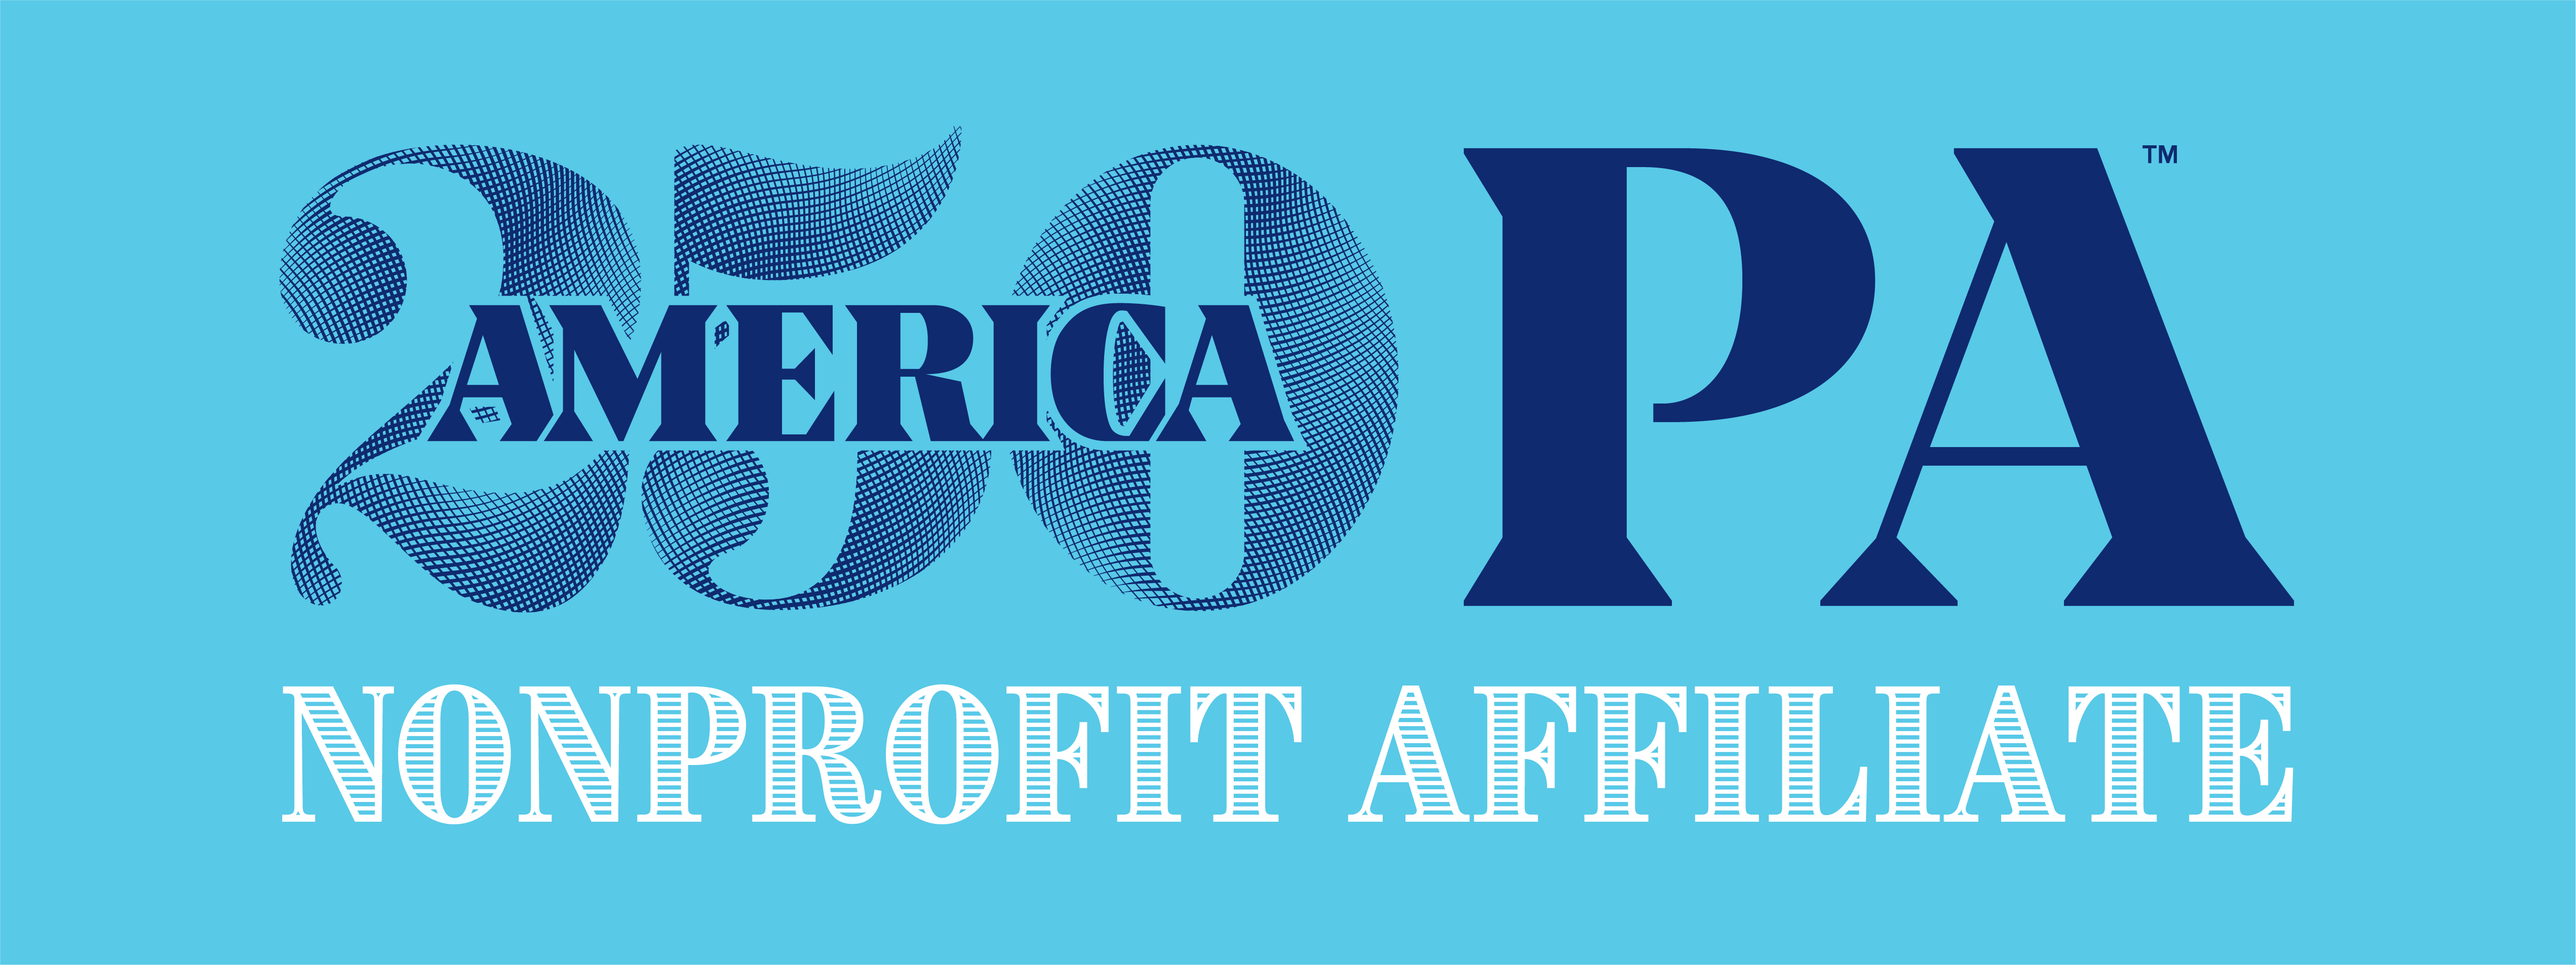 A250PA Nonprofit Affiliate Logo (1)